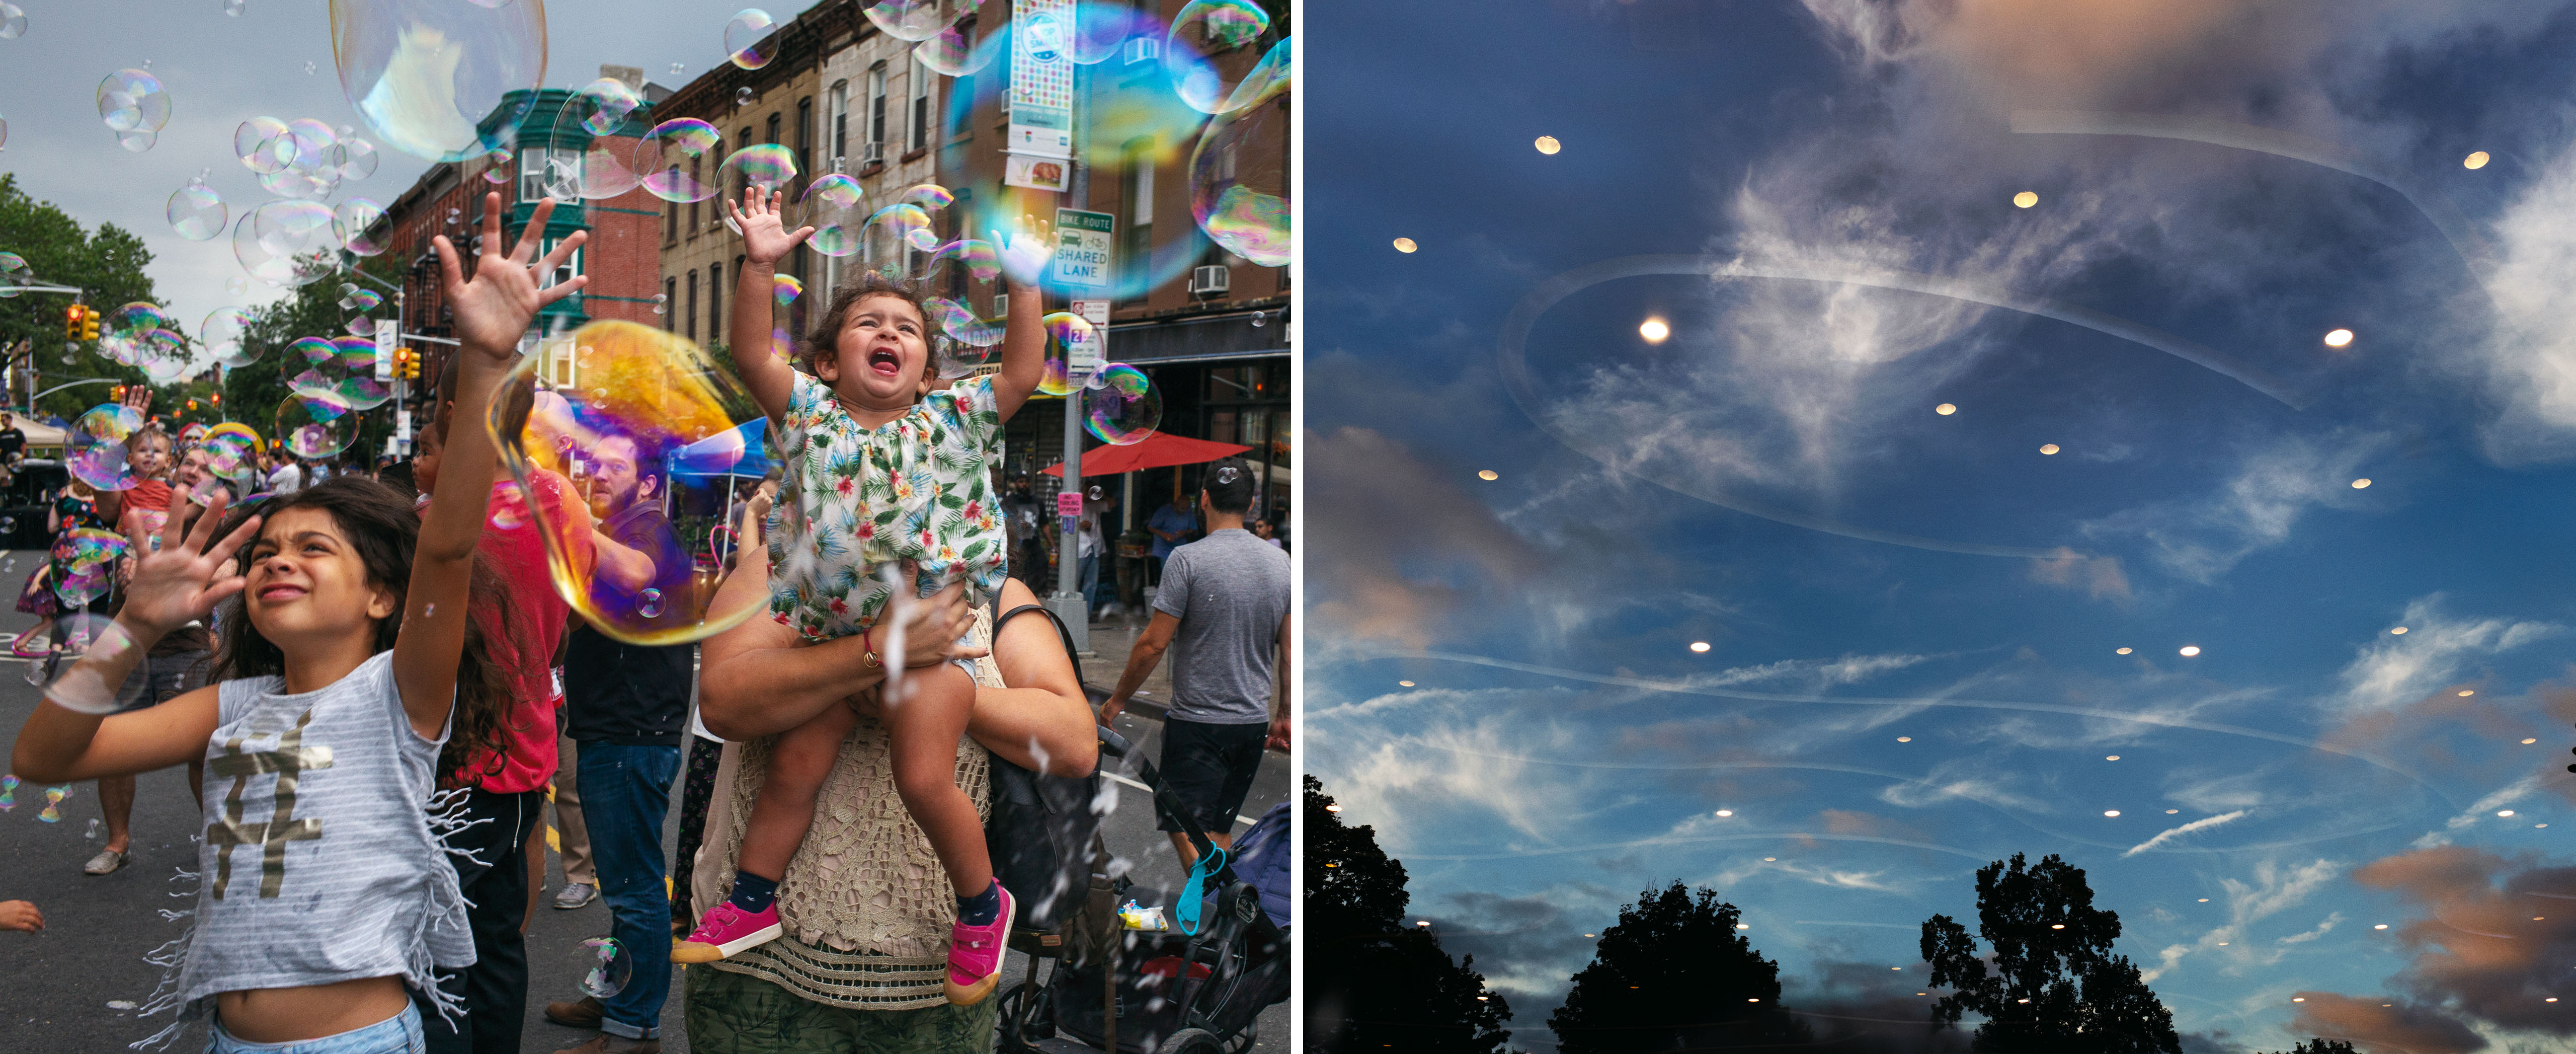 A la izquierda, miembros de la comunidad Park Slope en la calle jugando con burbujas. A la derecha, el cielo nocturno en Prospect Park con reflejos de las luces desde abajo.